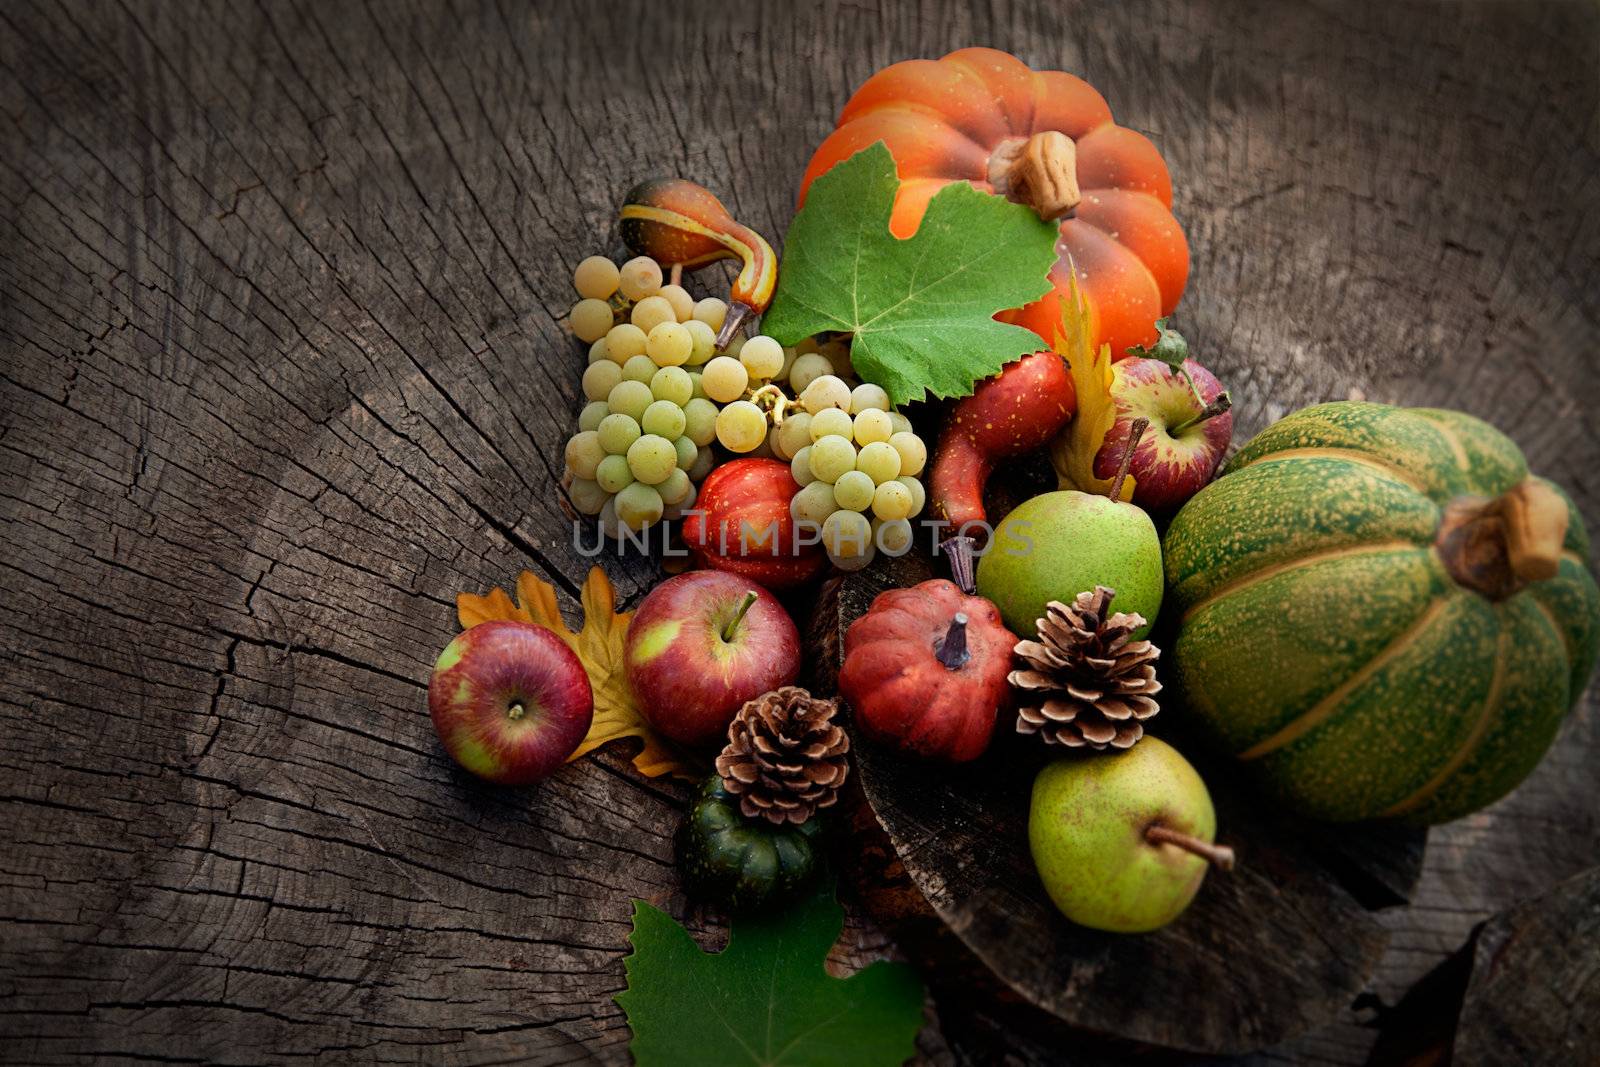 Autumn fruit by mythja